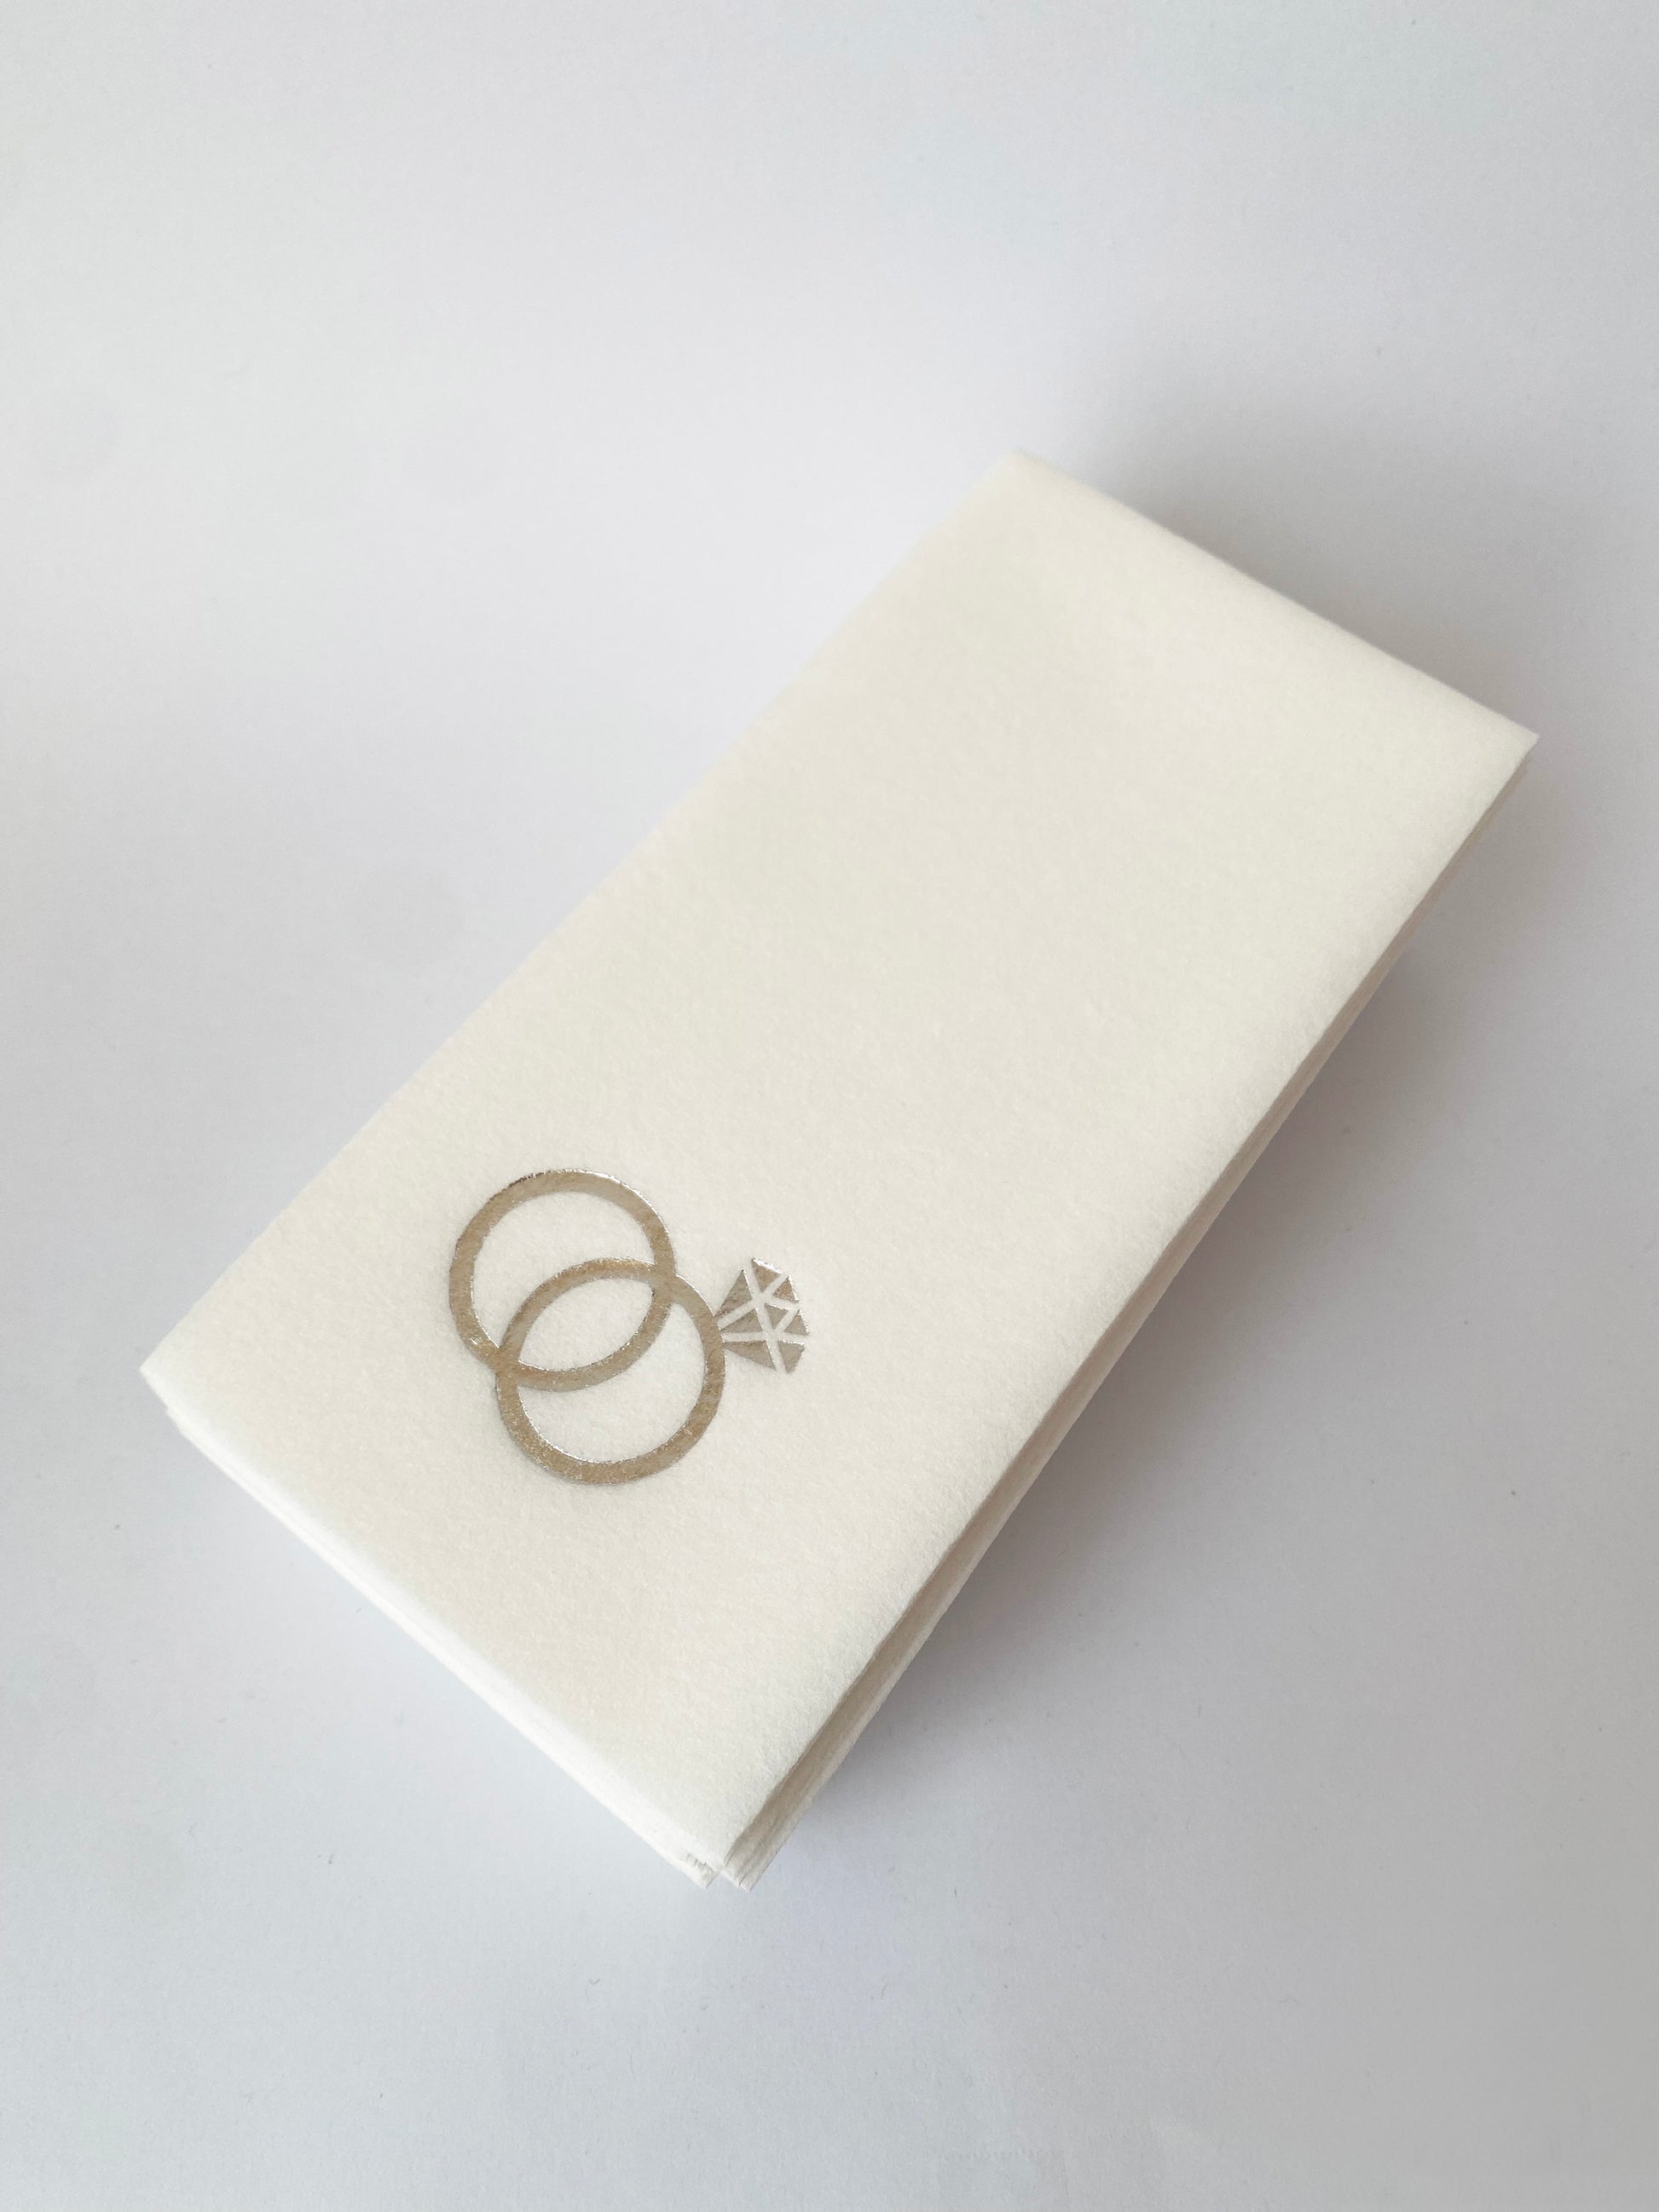 Servillletas rectangulares con figura de anillos en foil plateado